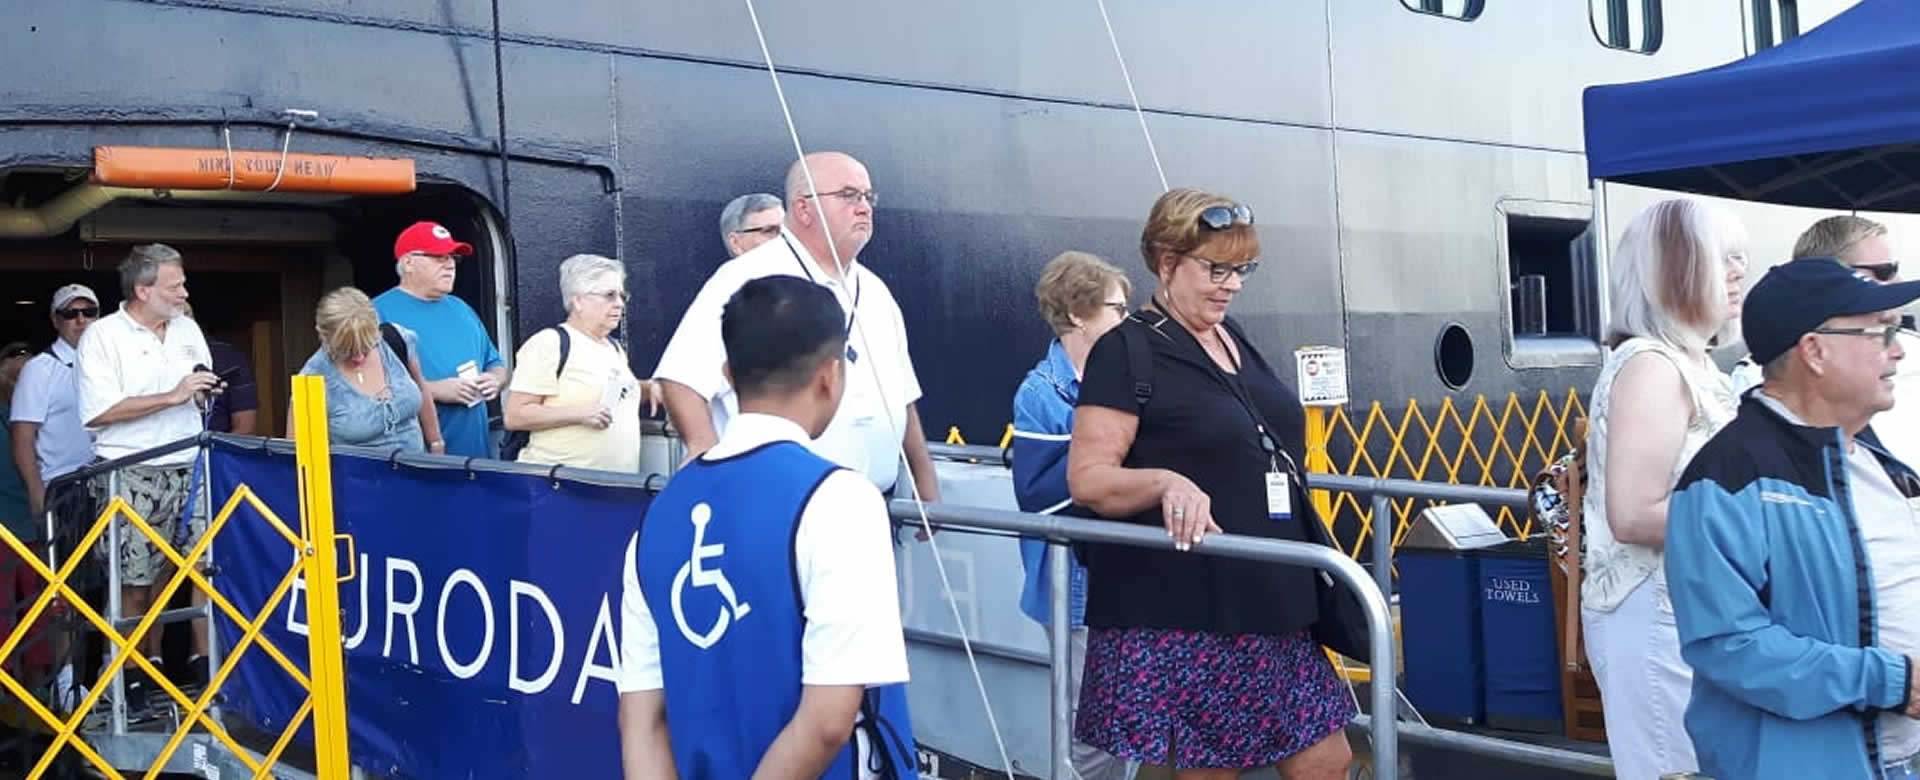 Turistas a bordo del Crucero Eurodam desembarcan en Puerto Corinto